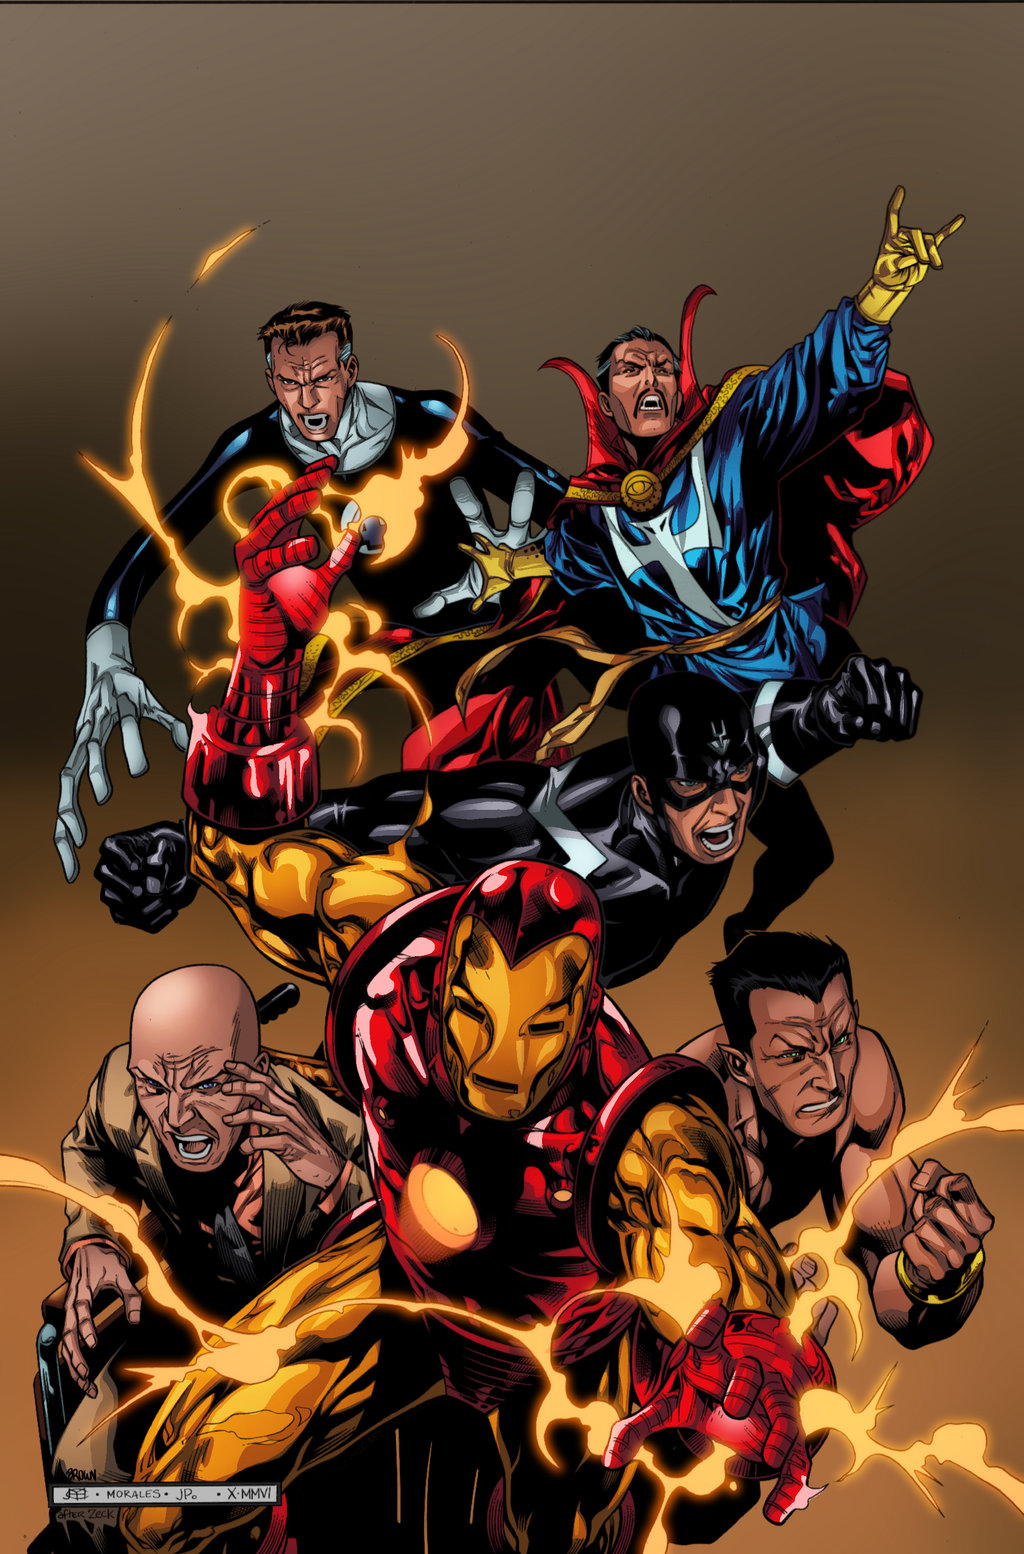 Marvel AVENGERS: INFINITY WAR Will Feature THE ILLUMINATI
